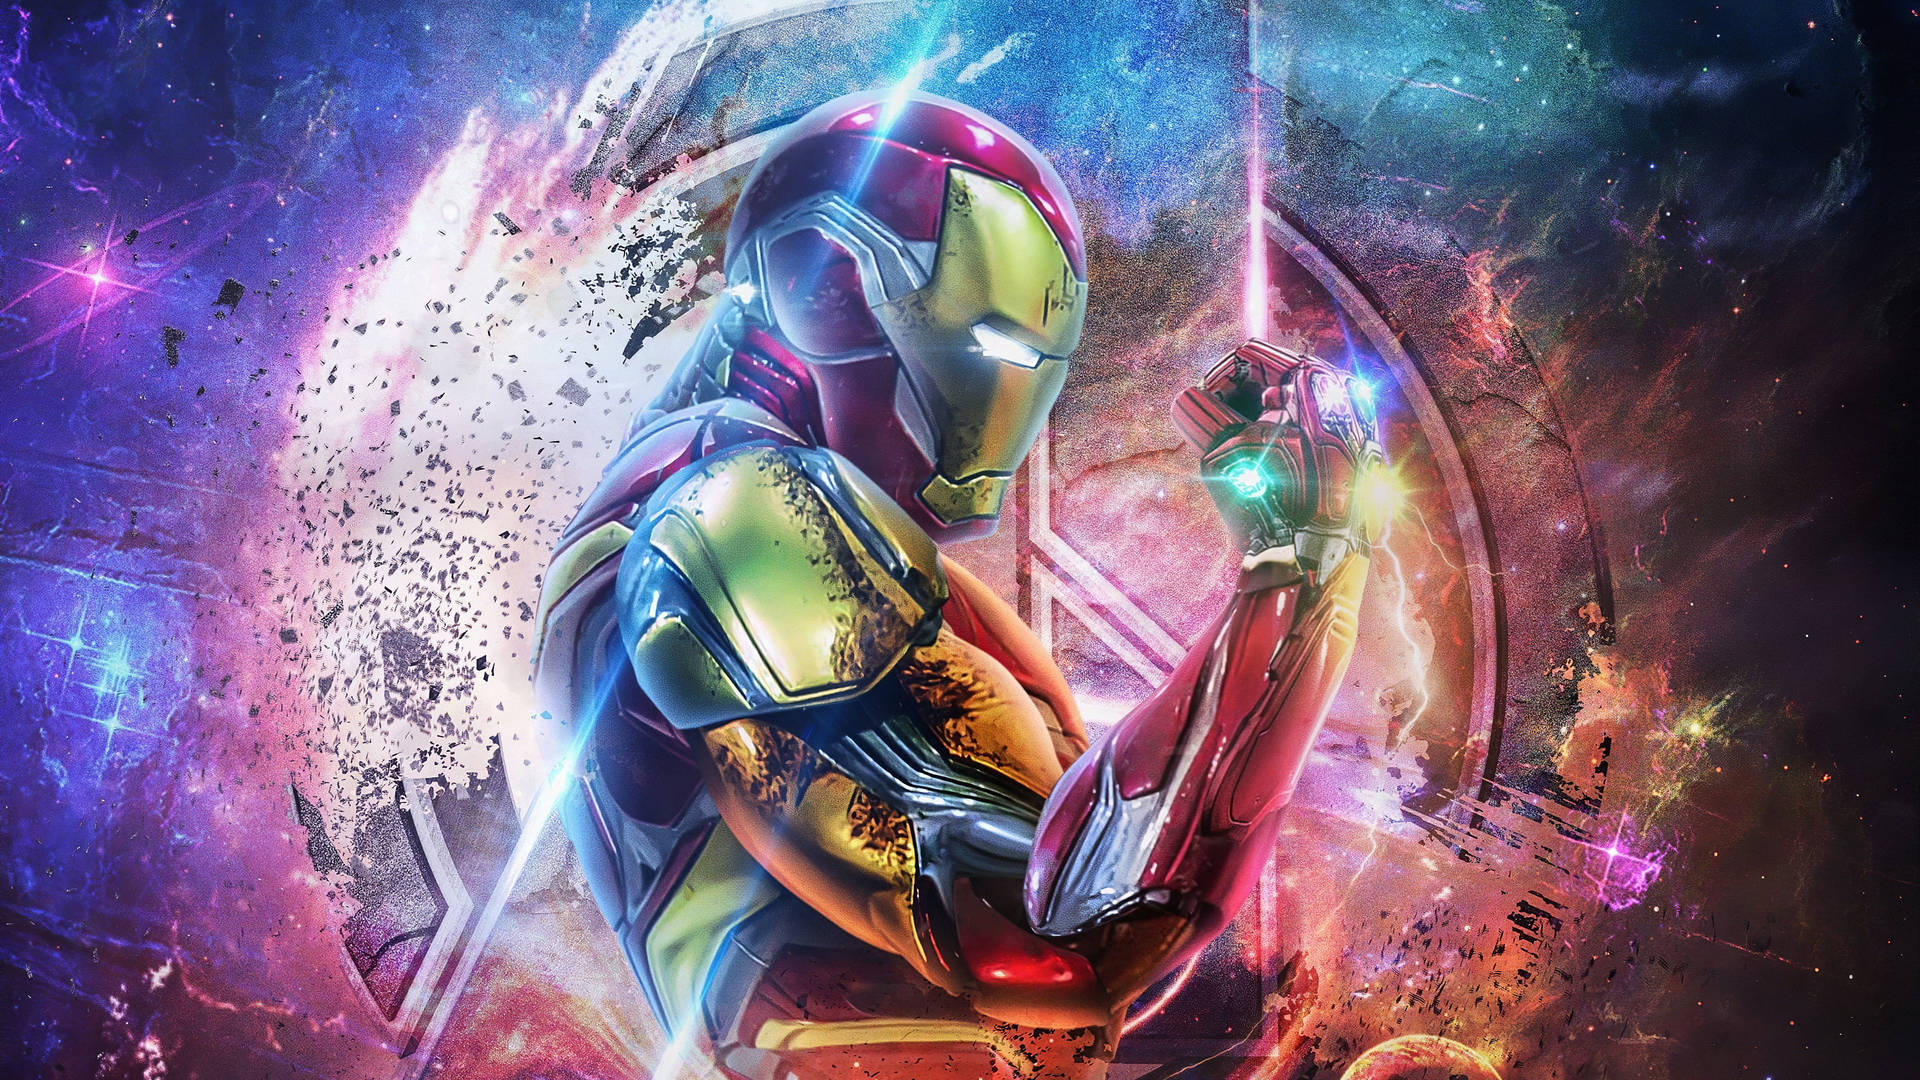 Free Iron Man Wallpaper Downloads, [500+] Iron Man Wallpapers for FREE |  